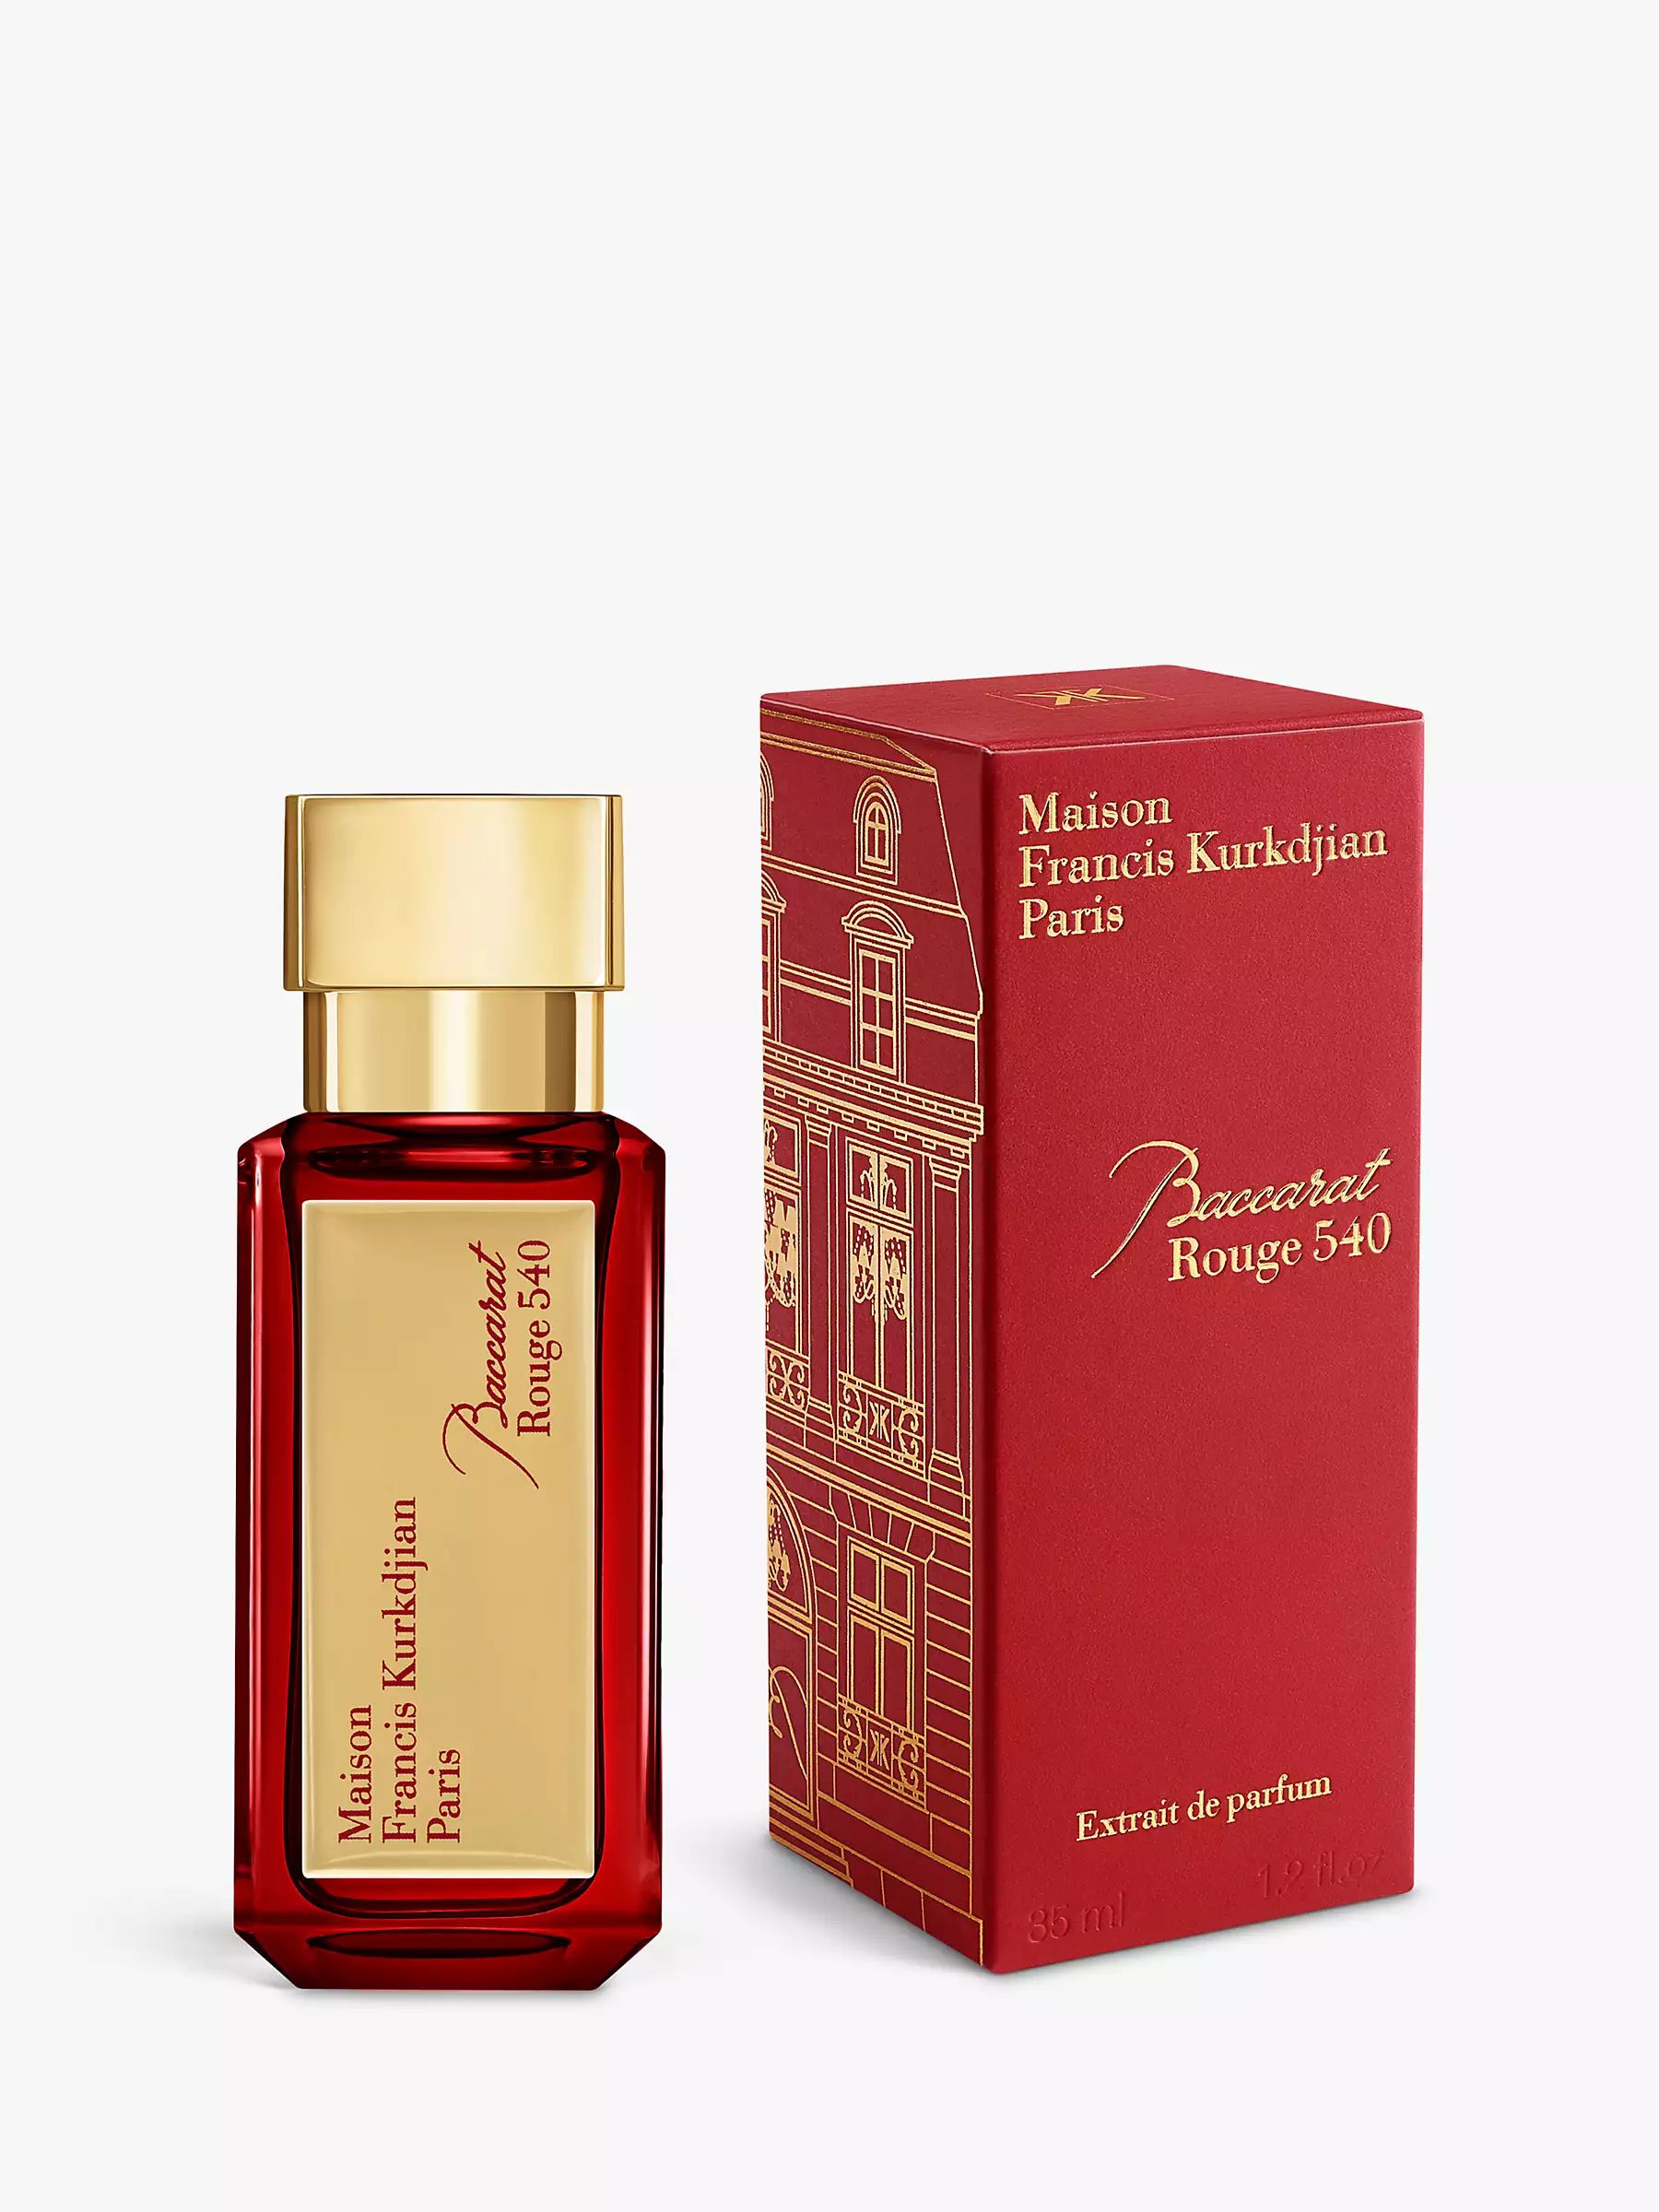 Maison Francis Kurkdjian Baccarat Rouge 540 Extrait de Parfum | John Lewis (UK)